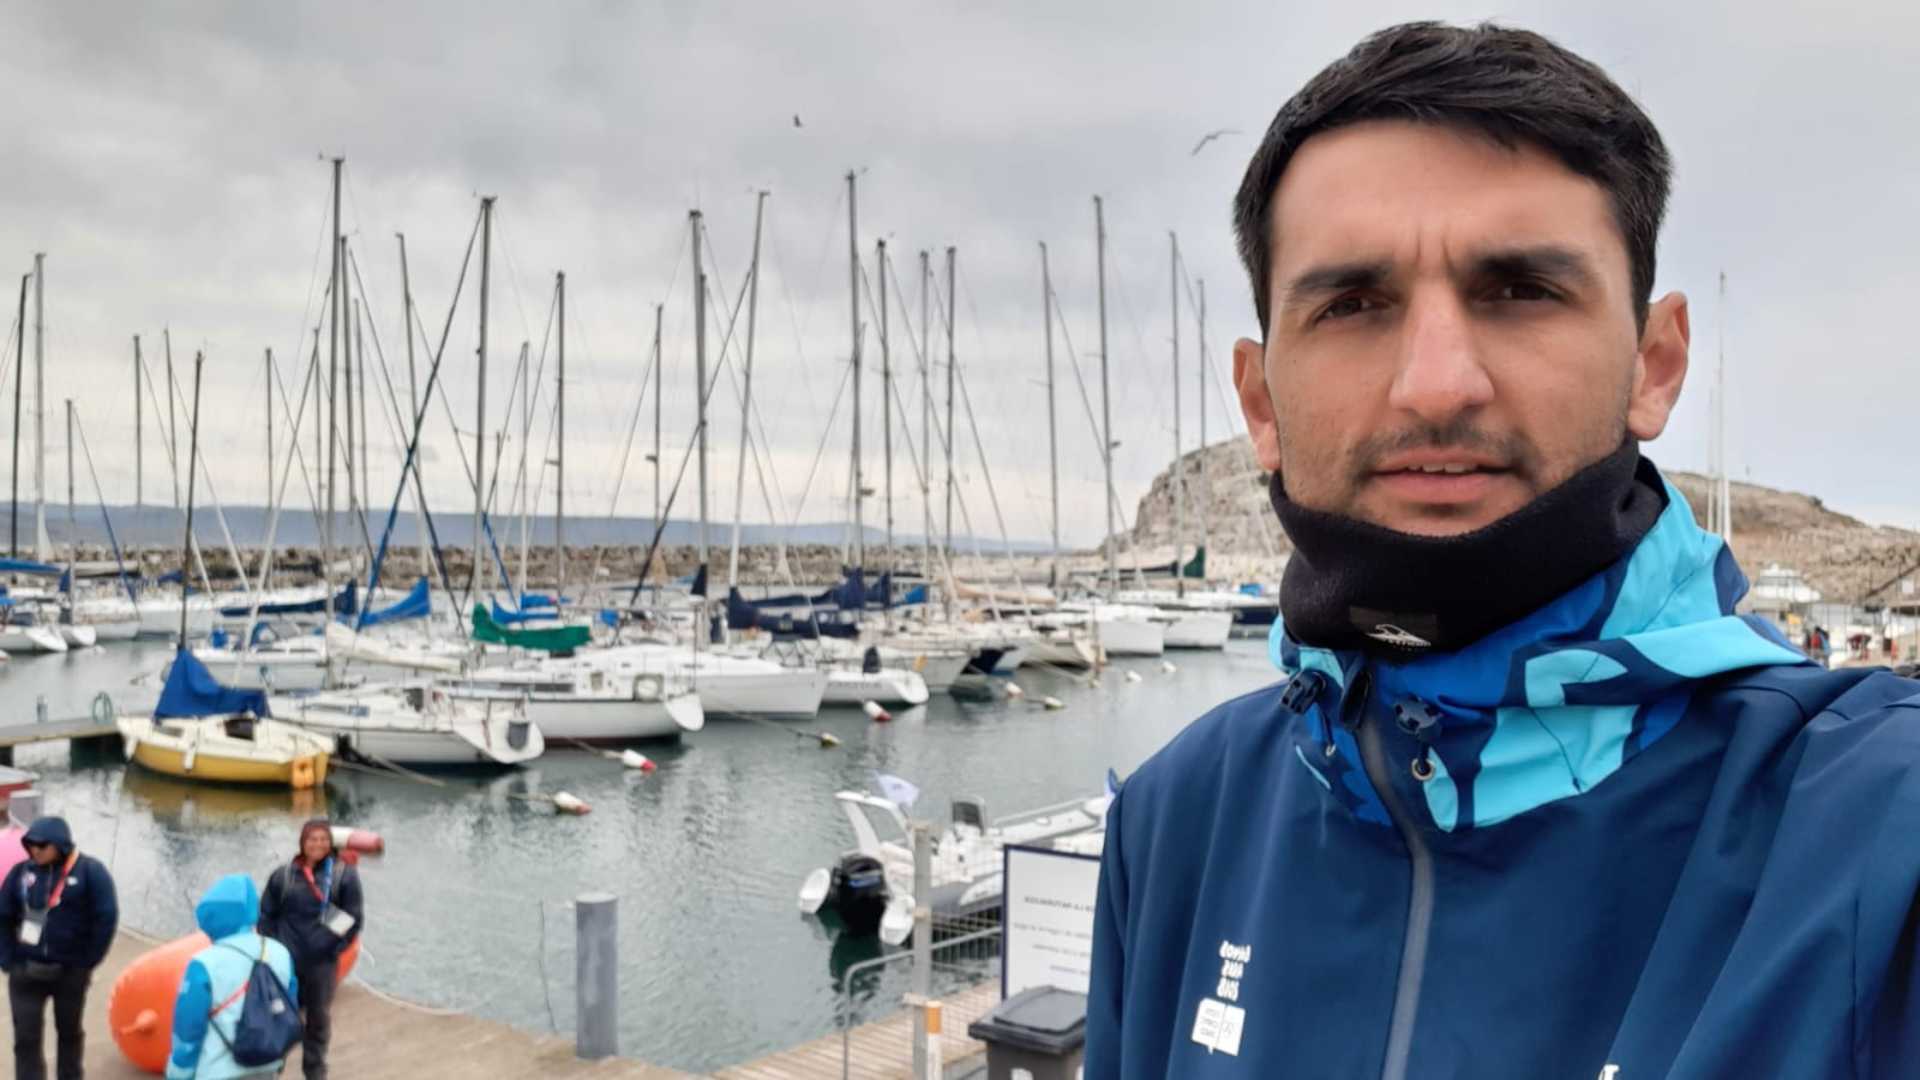 Periodista argentino vivió “el peor día de su vida laboral” subiéndose a un bote para cubrir la vela en el océano Pacífico